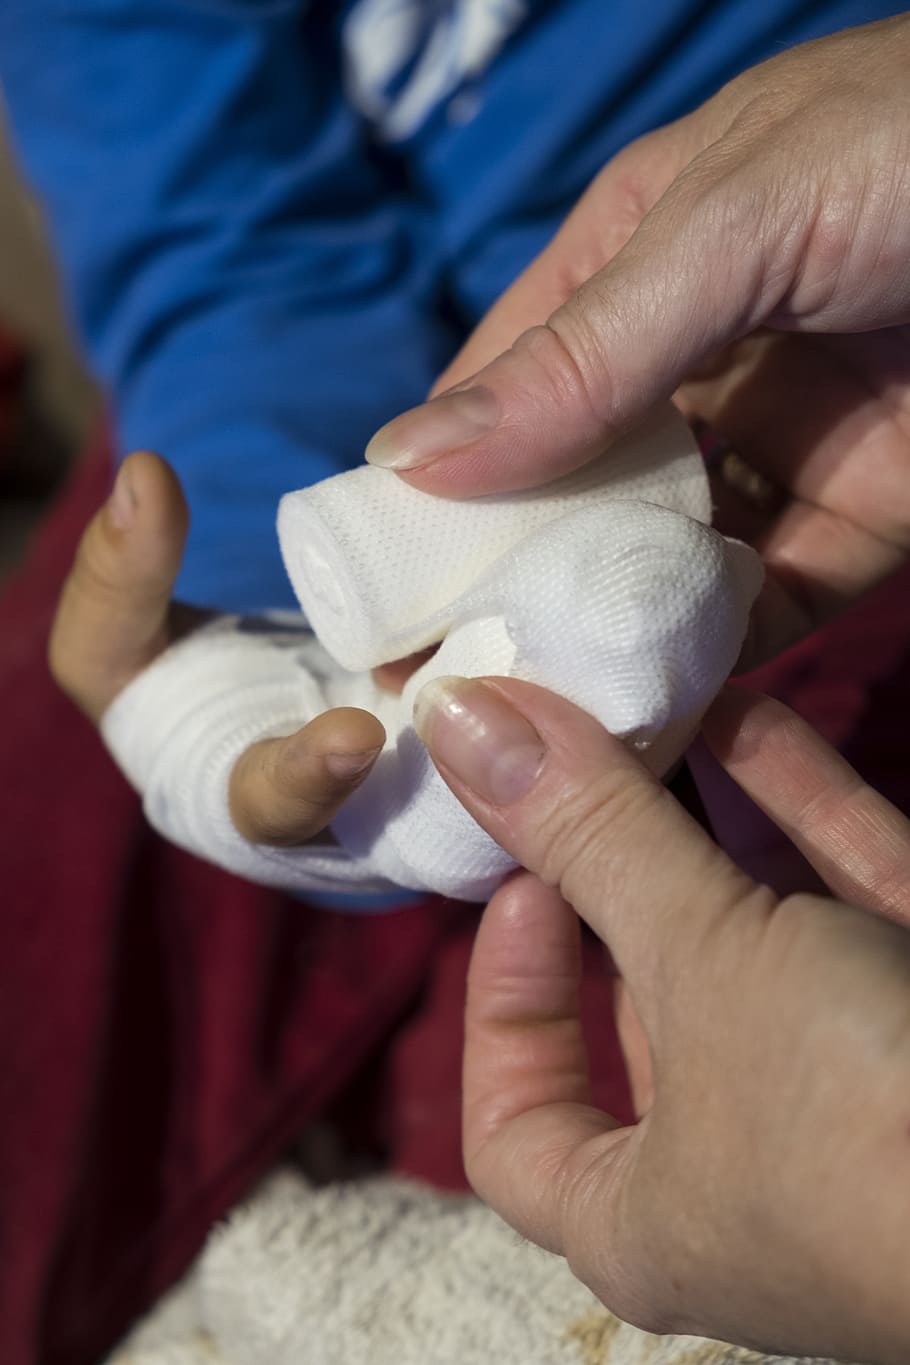 person, holding, white, gauze, child, boy, injury, injured, association, bandages